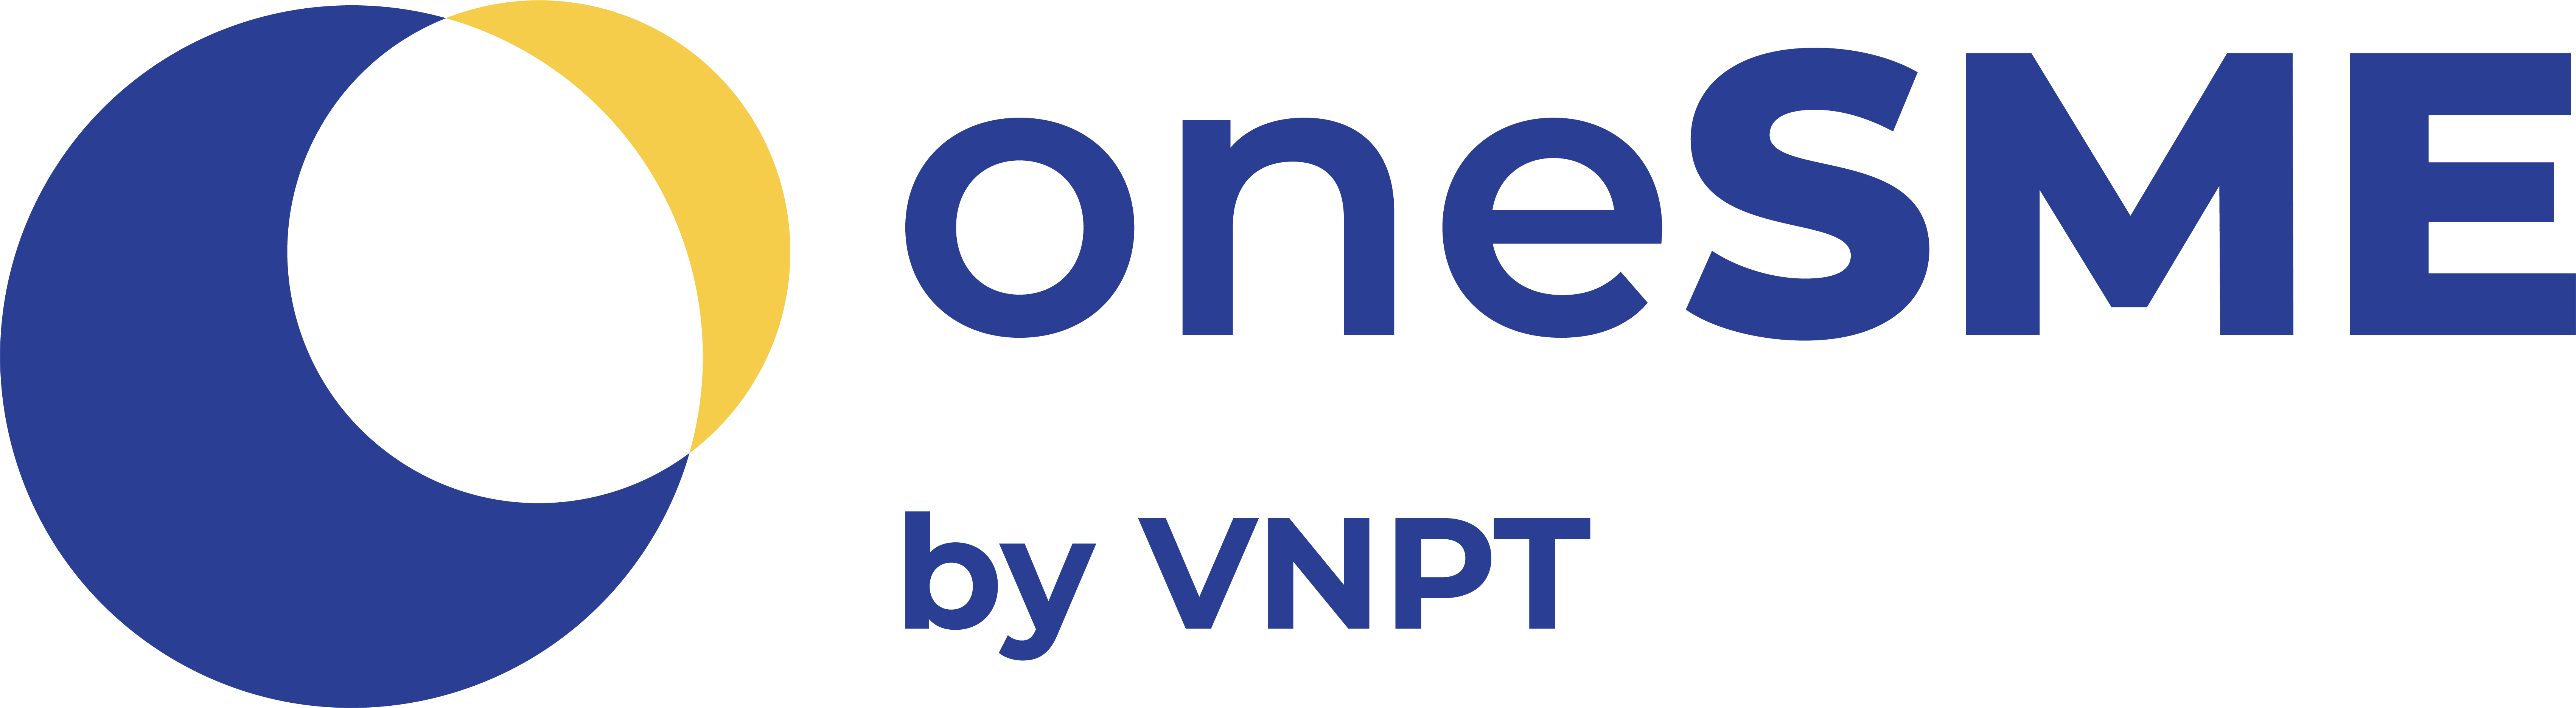 Onesme - Nền tảng chuyển đổi số dành cho doanh nghiệp của VNPT